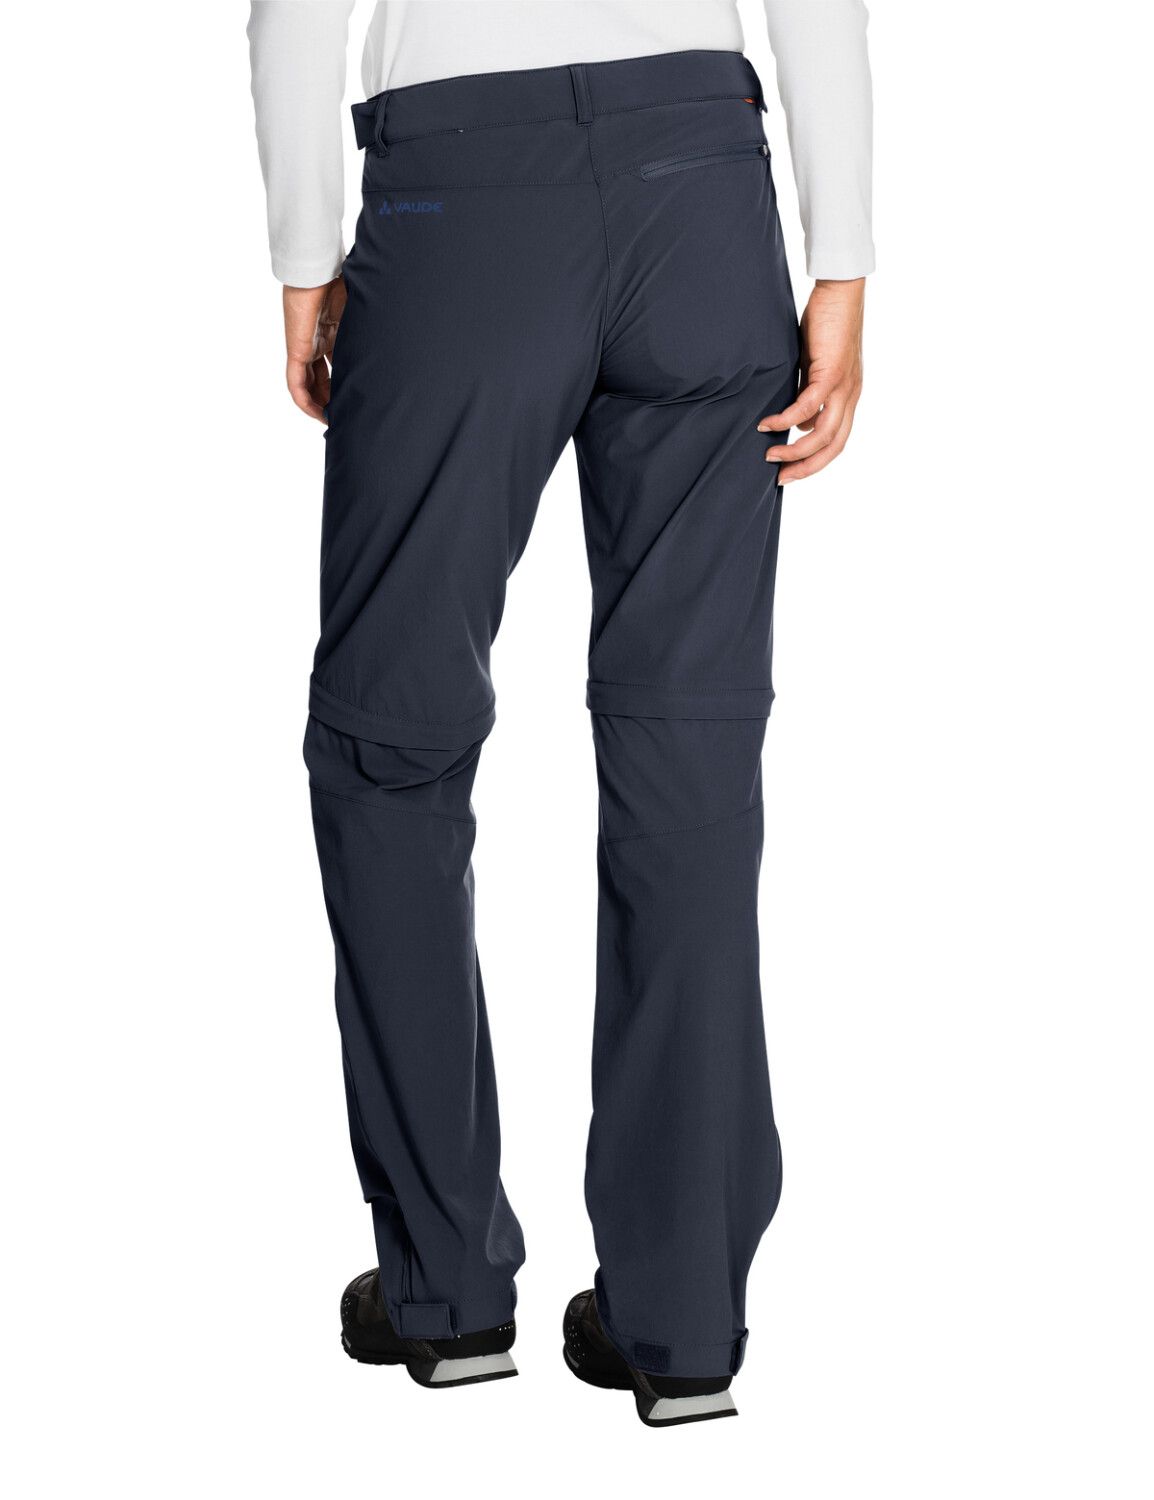 VAUDE Women's Farley Stretch ZO T-Zip Pants (Bild 46)